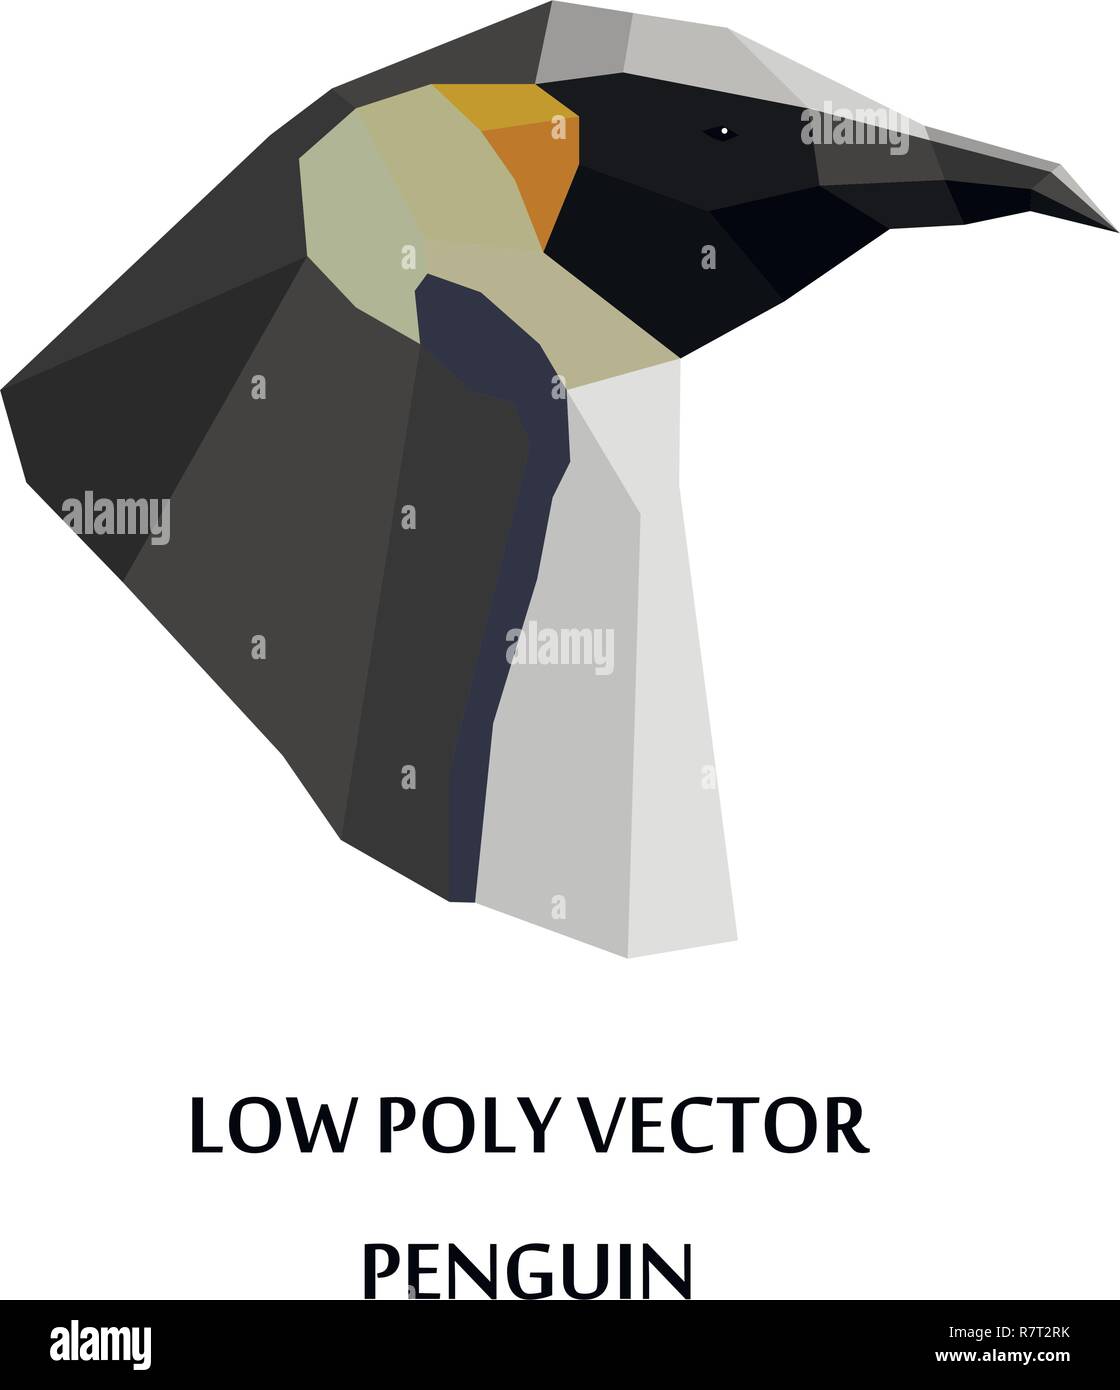 Kreative vektor design der Pinguine Kopf in Low Poly Stil. Stock Vektor